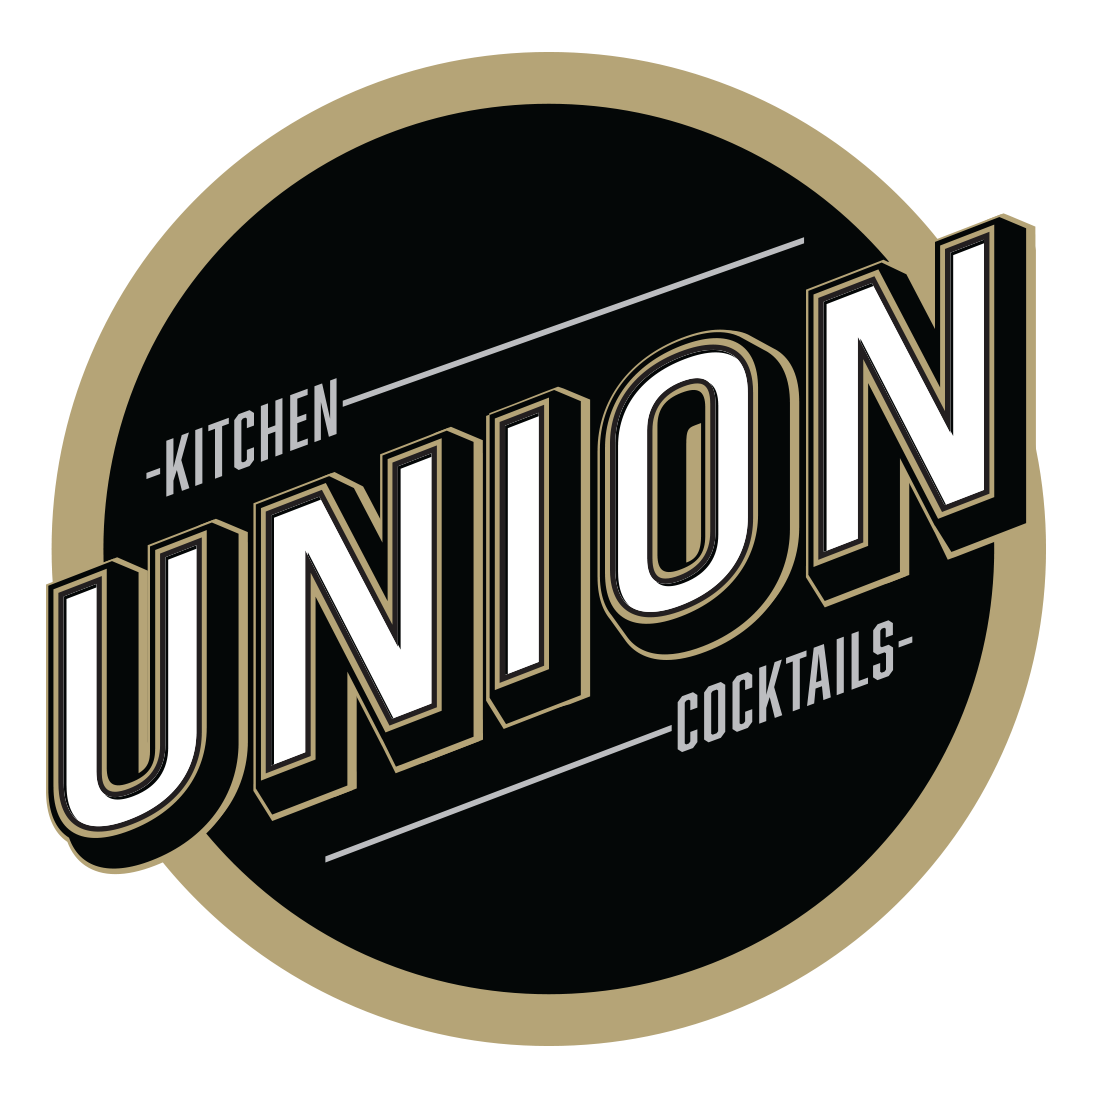 Union Kitchen + Cocktails